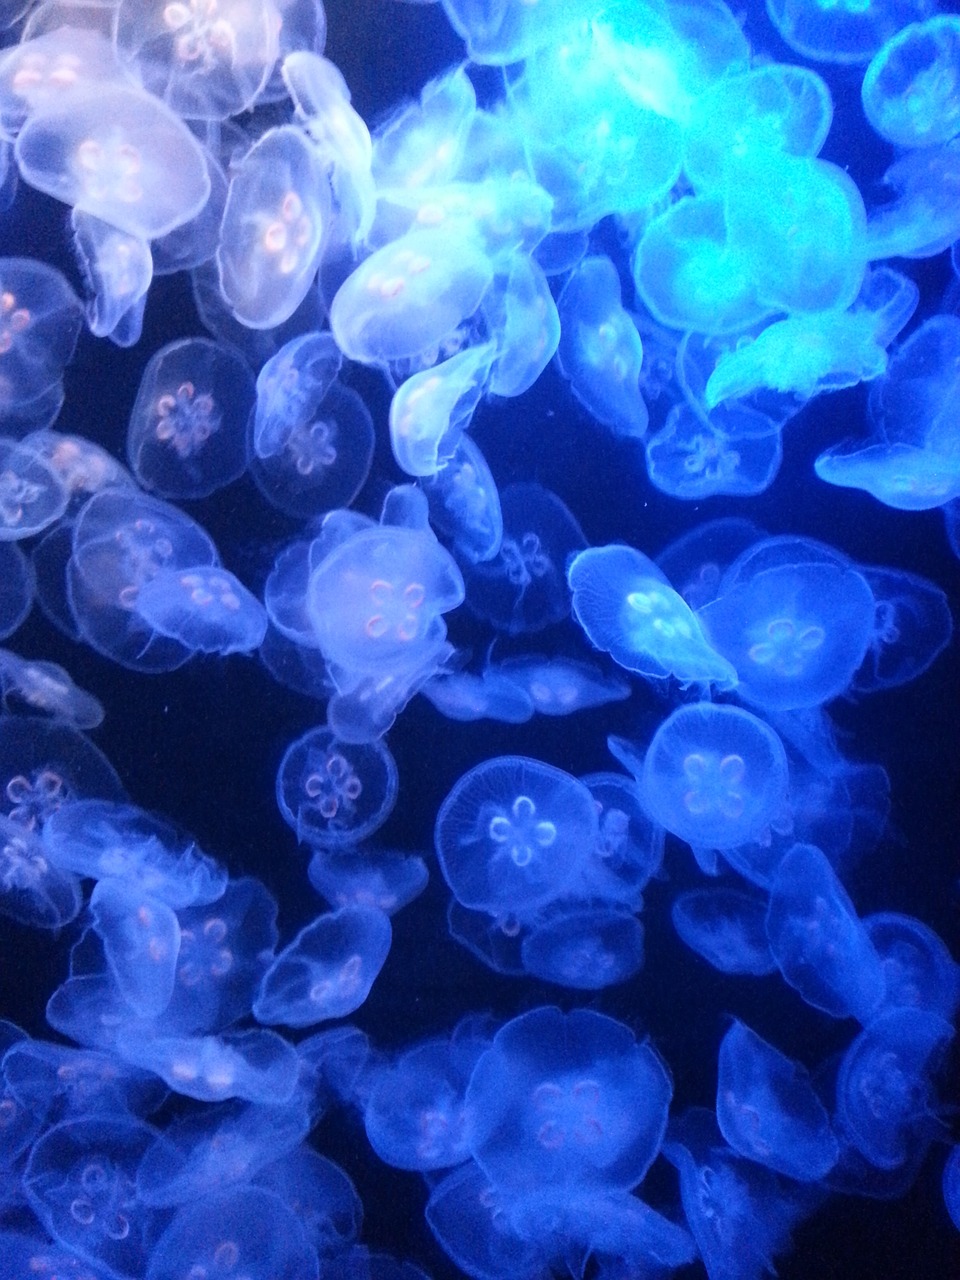 jellyfish jelly fish underwater free photo